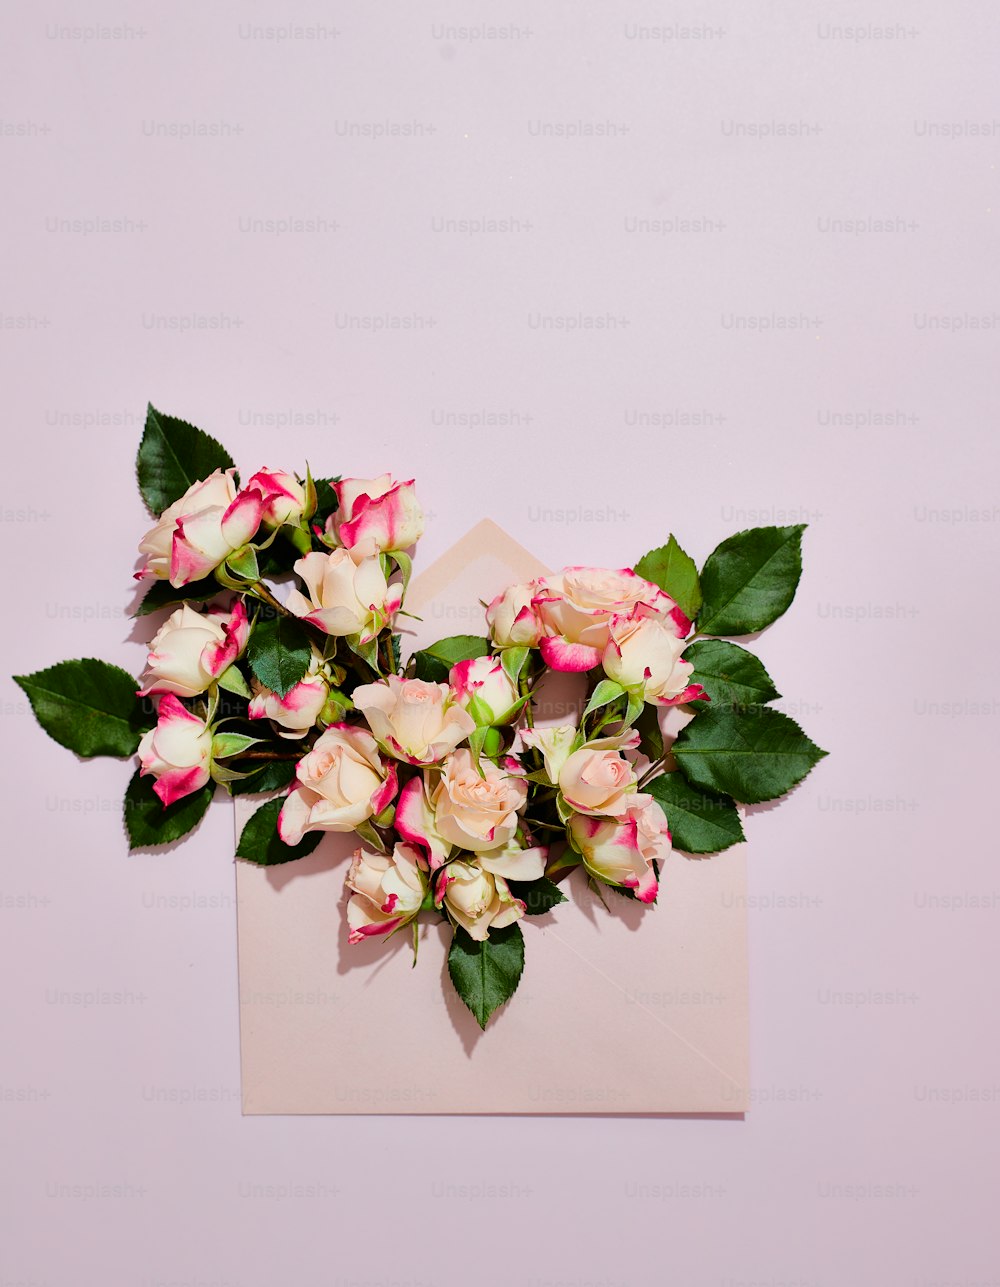 종이 위에 놓인 분홍색과 흰색 꽃다발